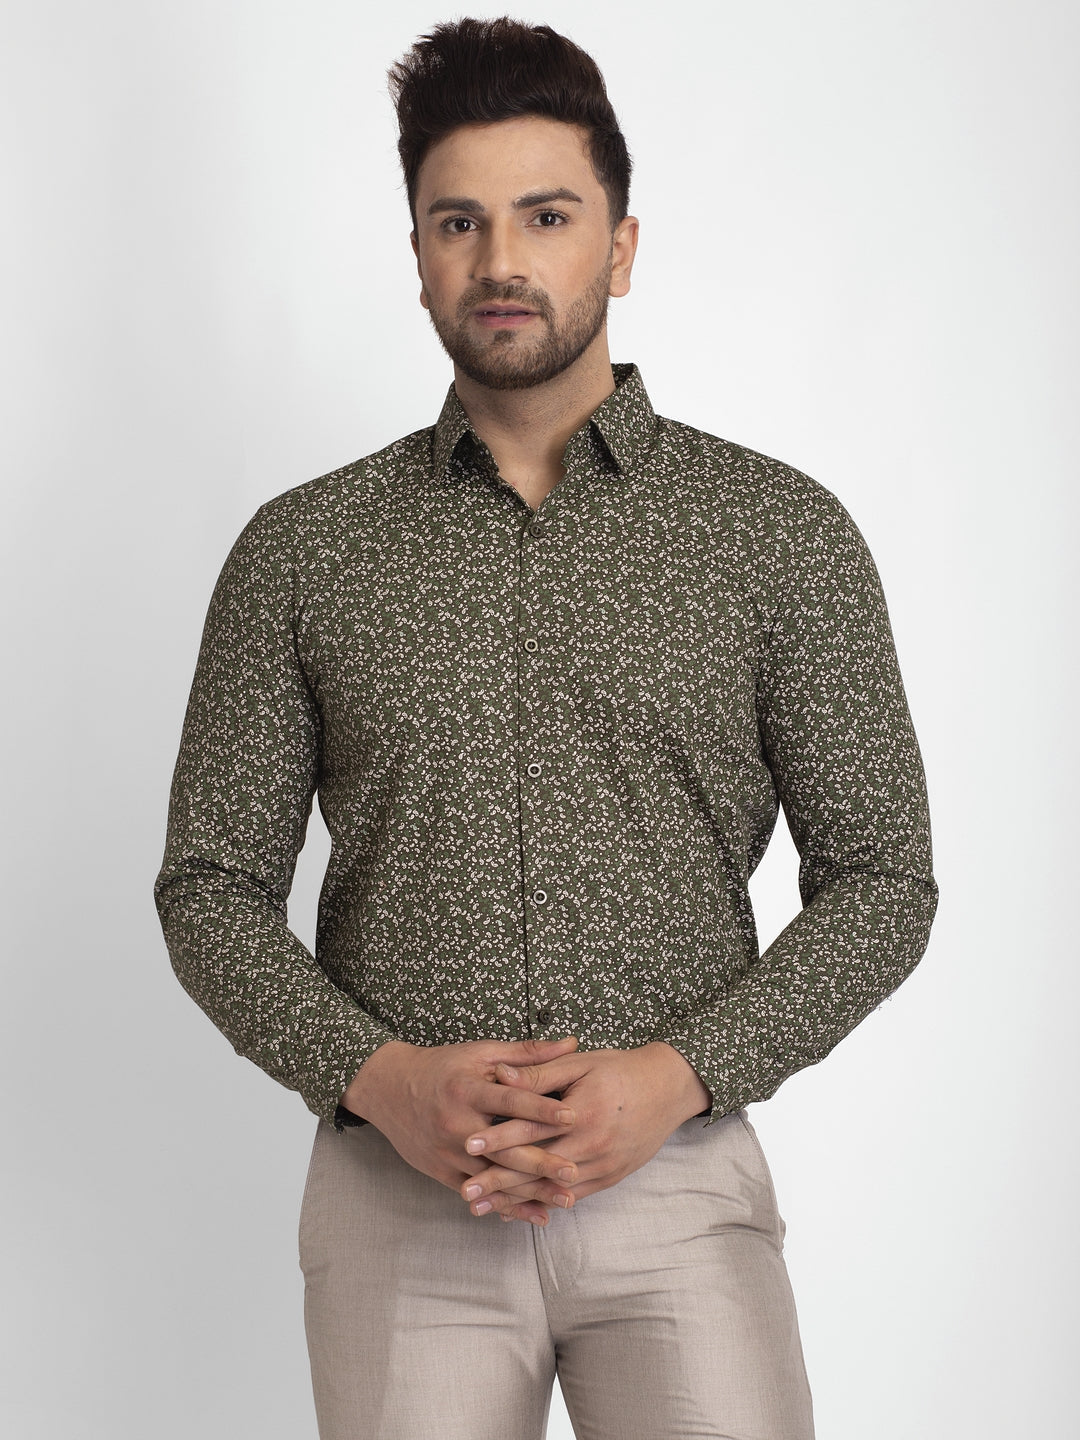 Men's Olive Green Printed Formal Shirt ( JSF 426Olive ) - Jainish